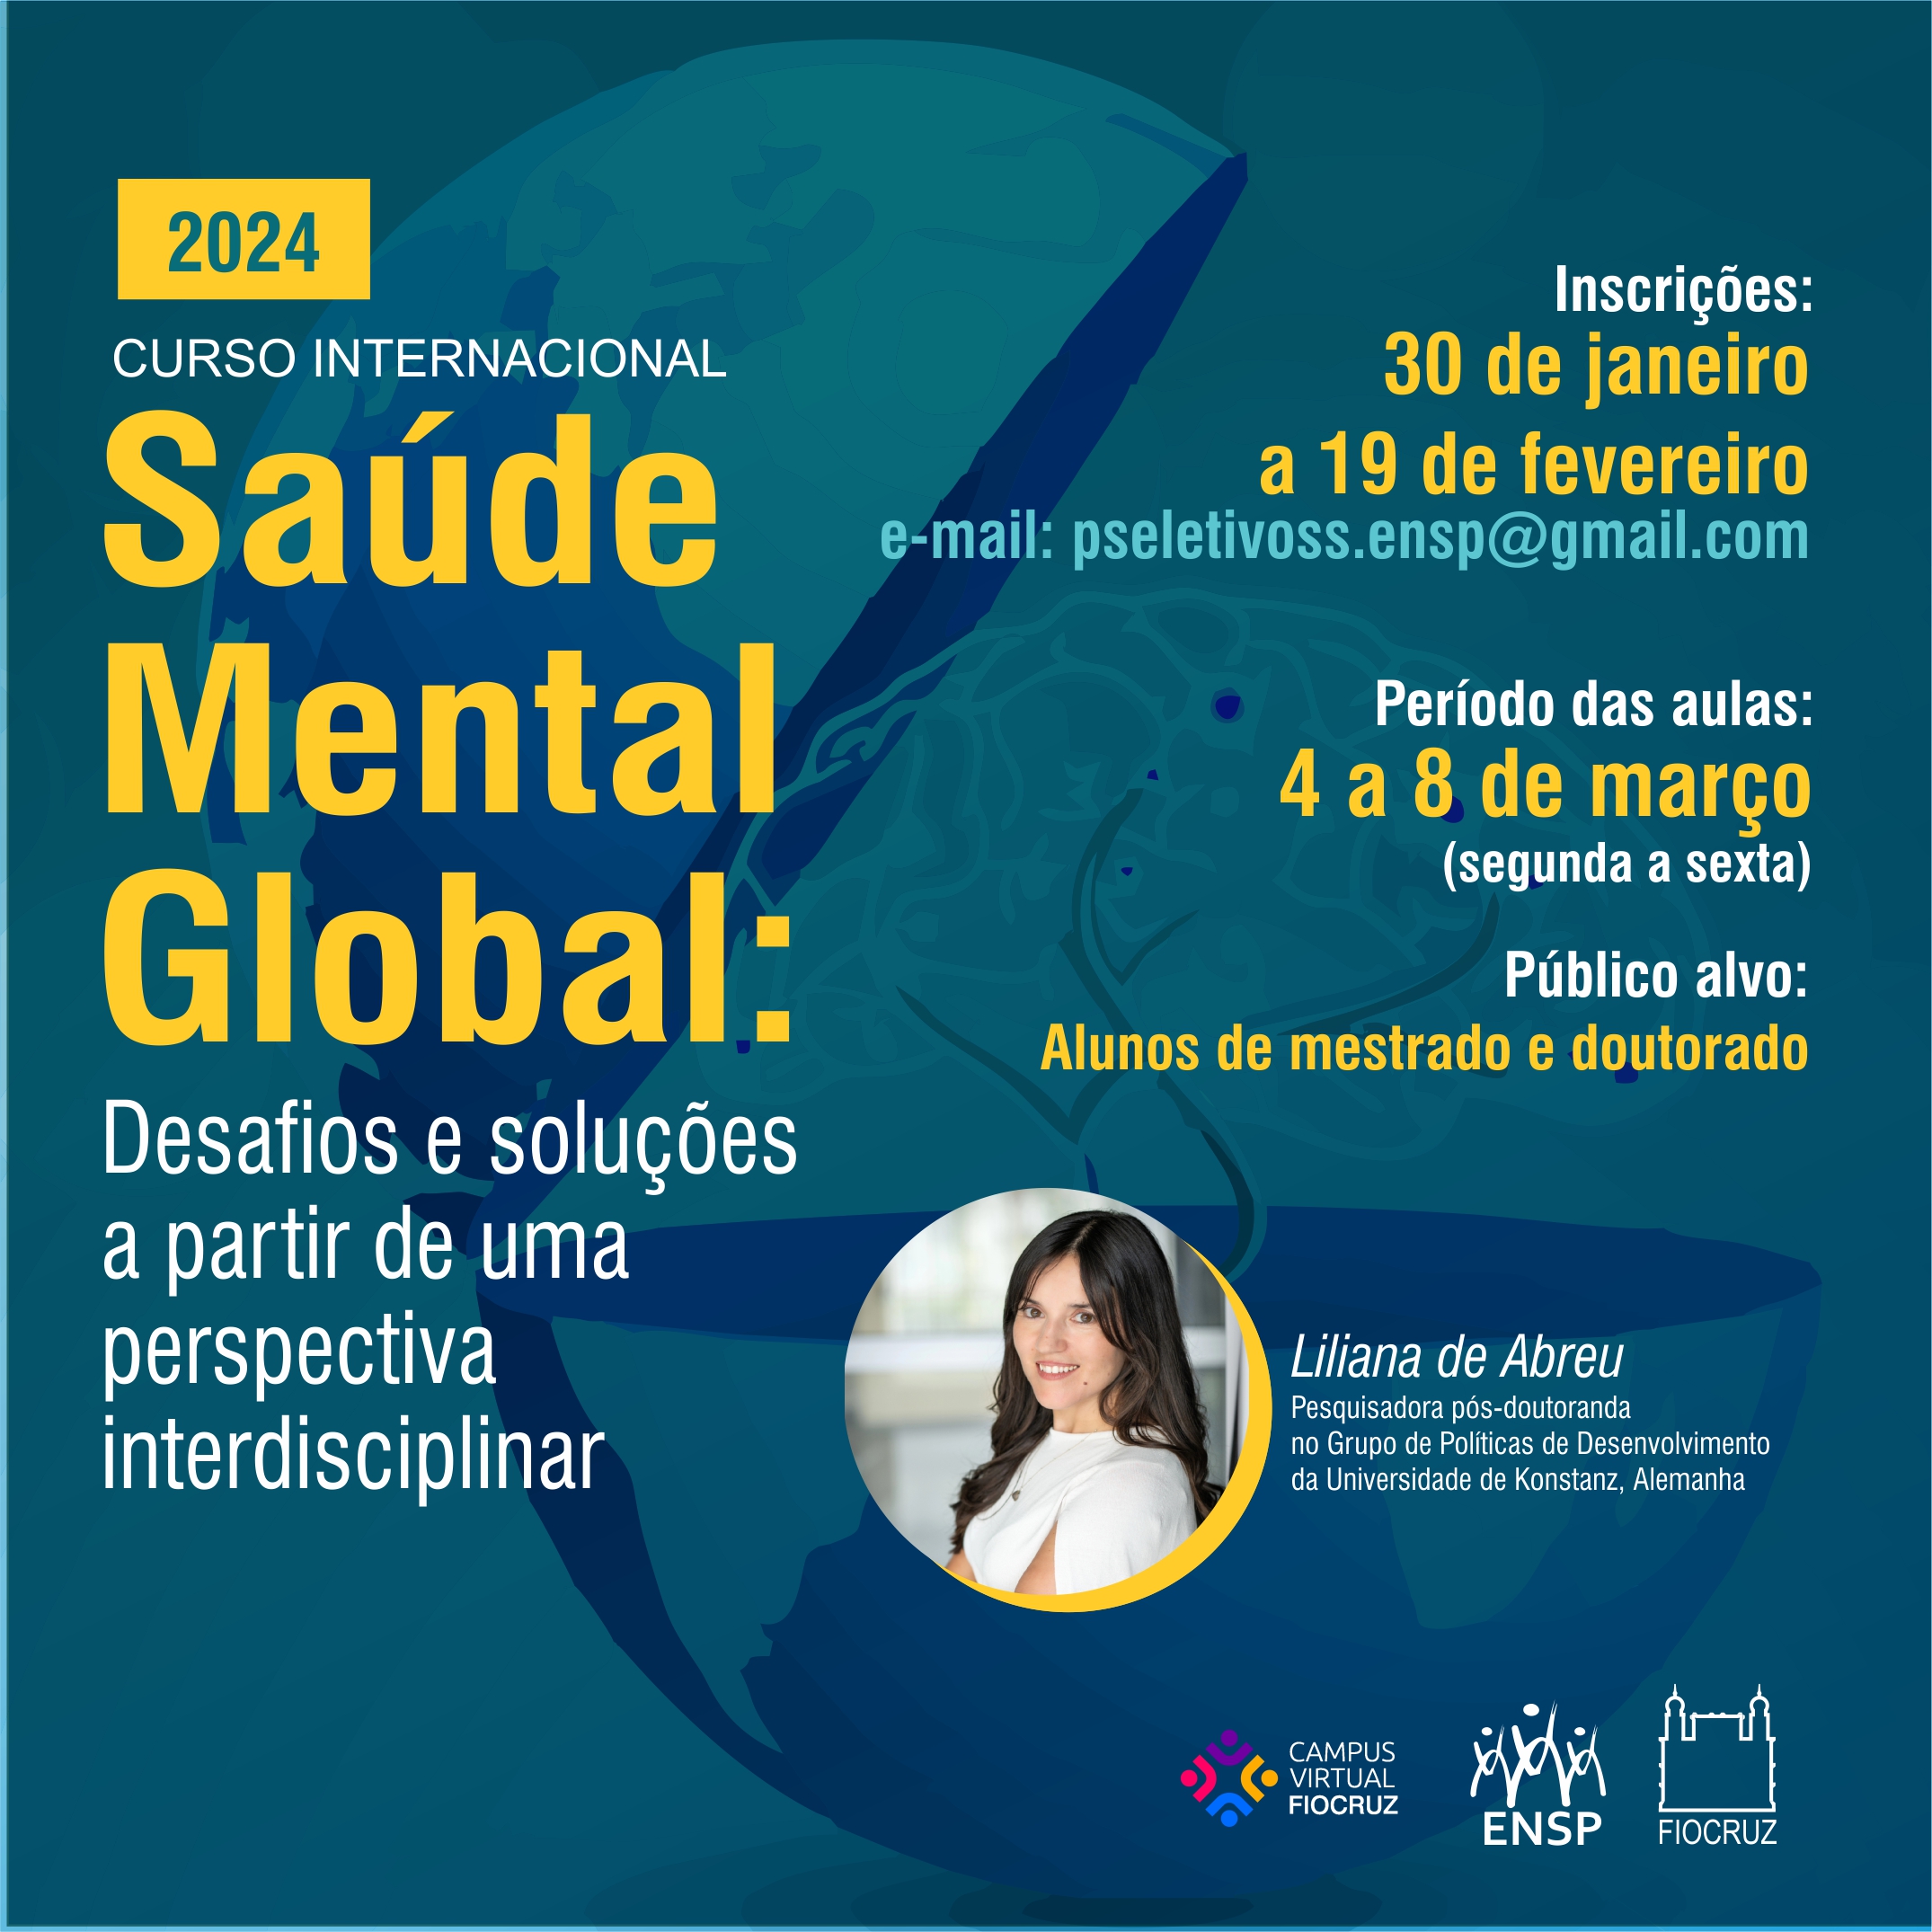 Inscrições abertas para Curso Internacional em Saúde Mental Global